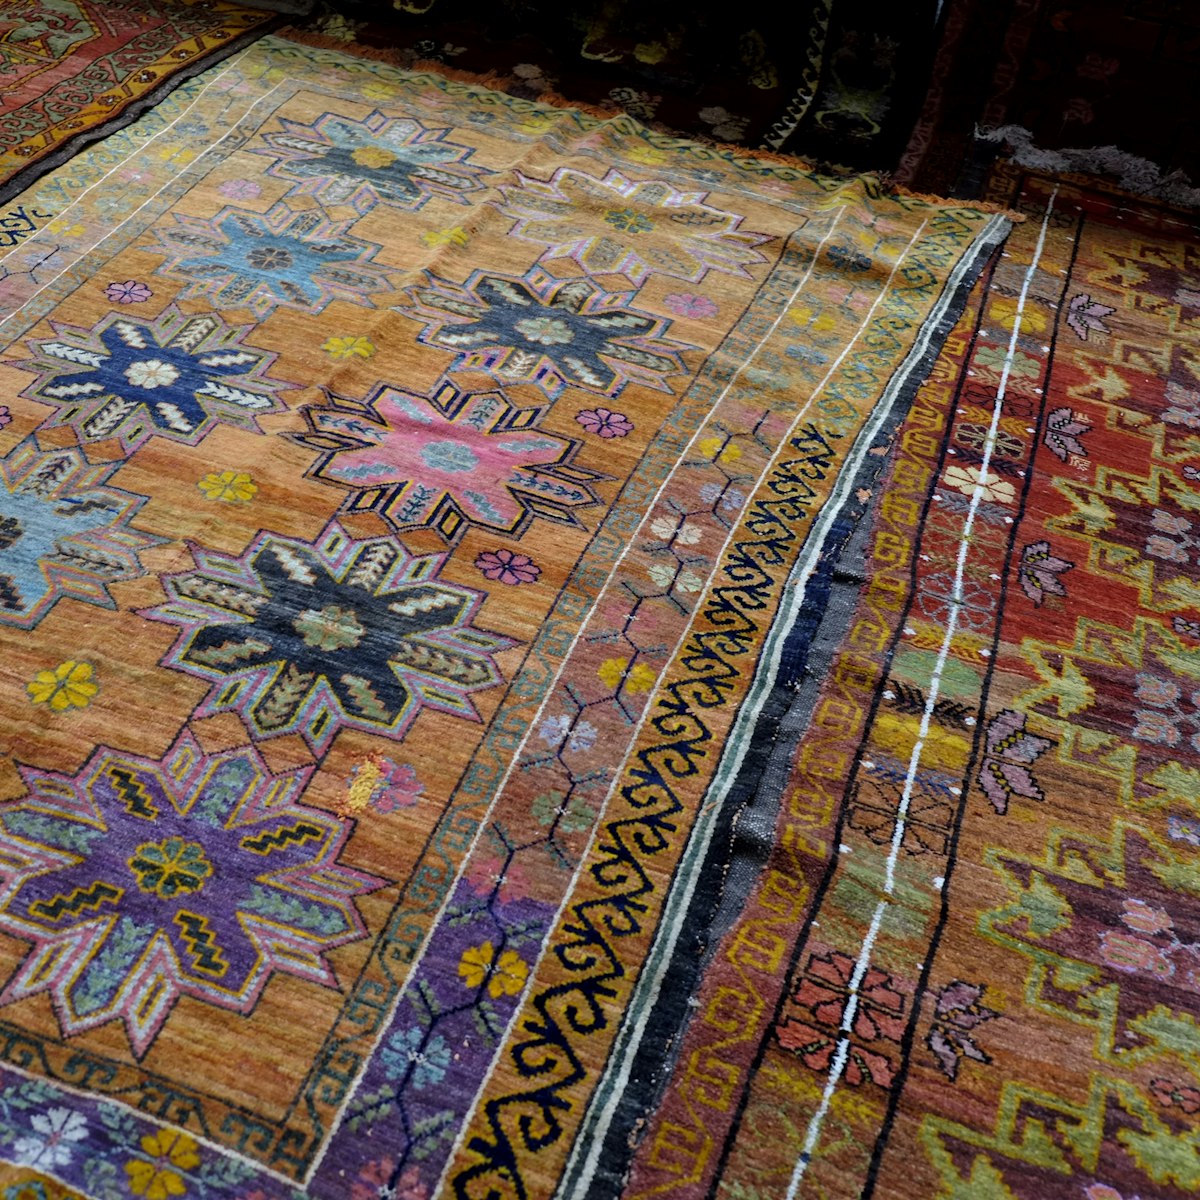 (GERMANY OUT) Teppiche mit traditionellen Mustern - Kunsthandwerk auf dem Basar im Zentralen Staatsmuseum der Republik Kasachstan in Almaty  (Photo by snapshot-photography/ullstein bild via Getty Images)